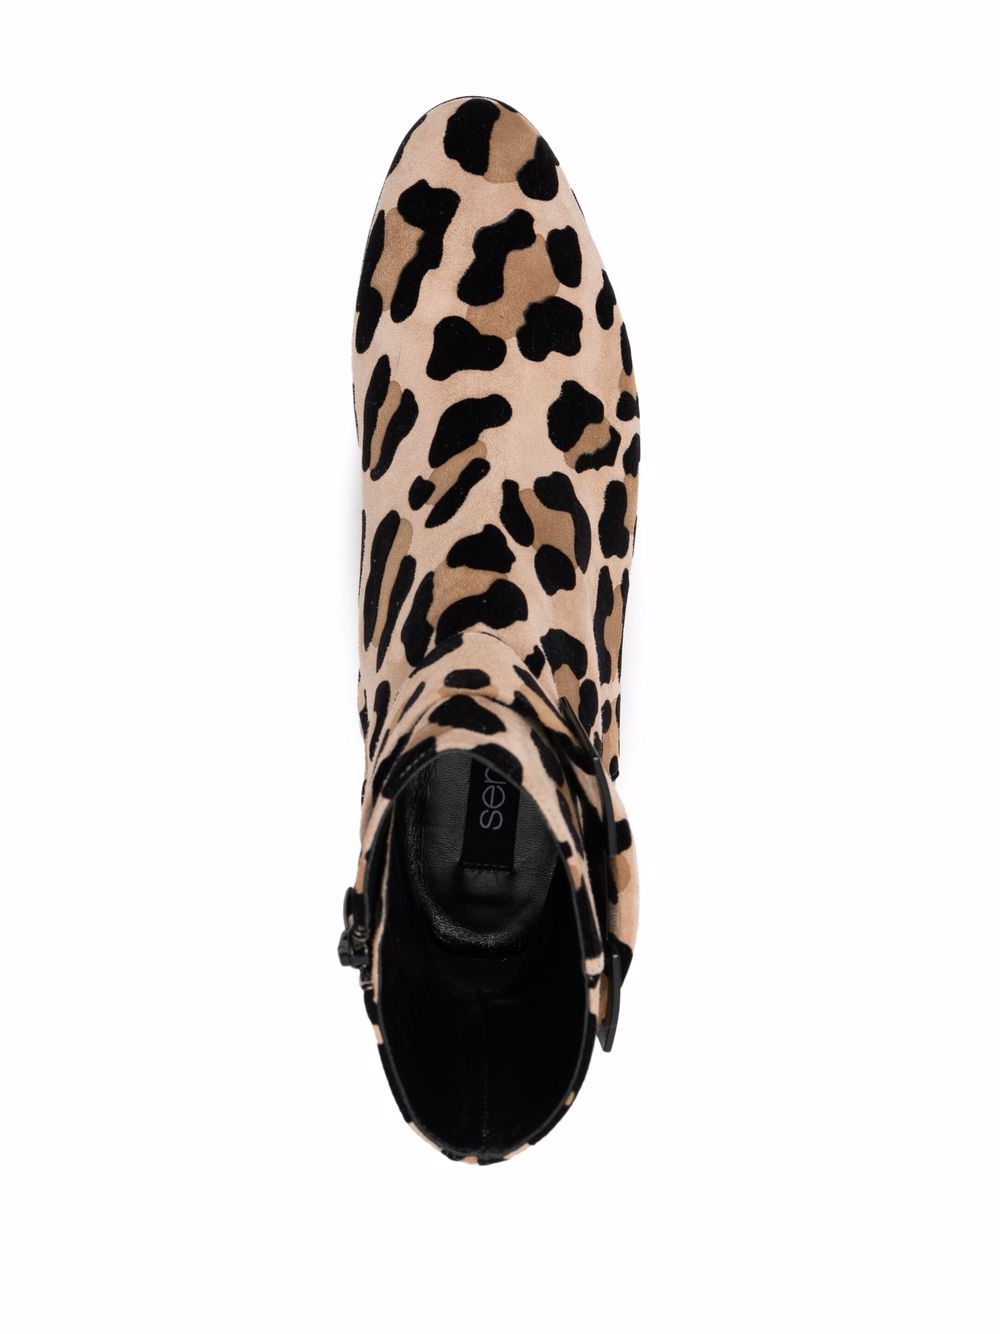 фото Sergio rossi ботинки с леопардовым принтом